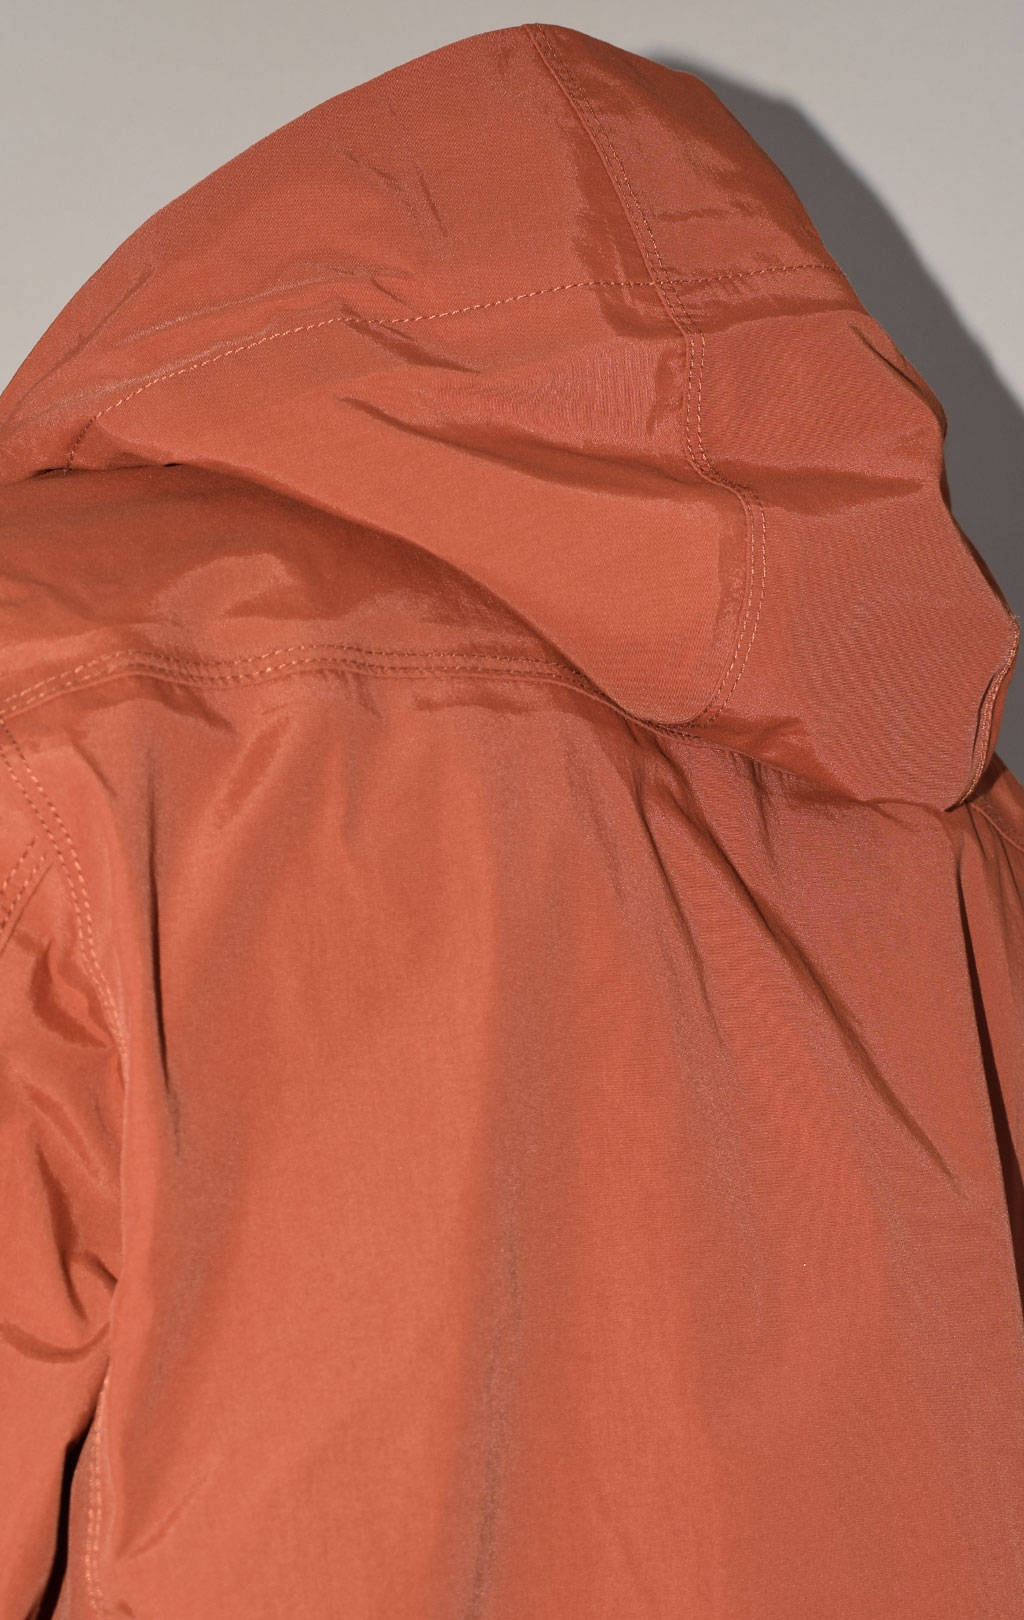 Куртка тактическая Pentagon мембрана HURRICANE maroon red 07104 